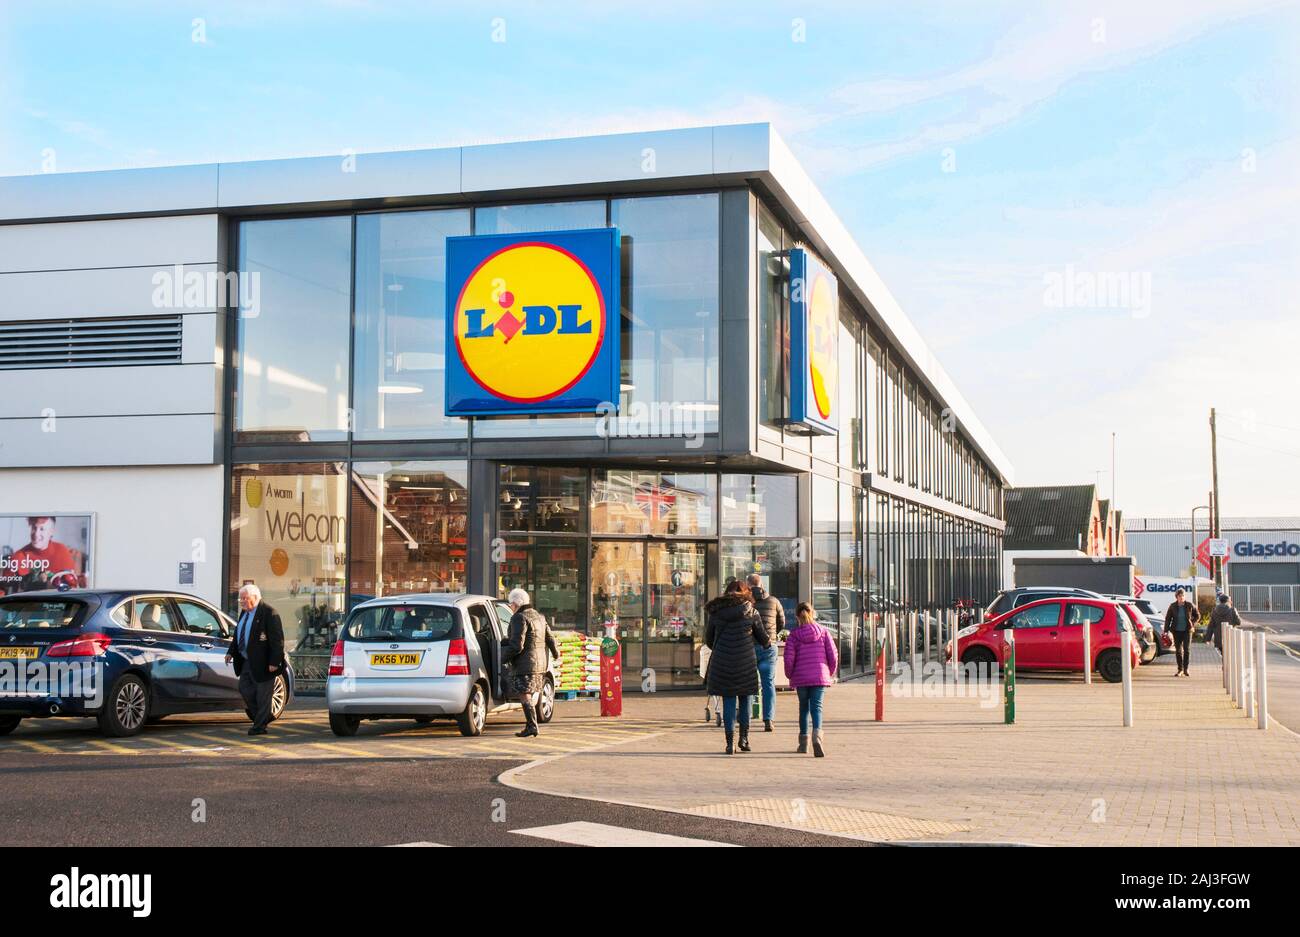 Les consommateurs d'aller dans un magasin Lidl nouvellement construit à Poulton le Fylde Lancashire England UK vente cuttring des éléments tels que les boissons, la nourriture, les vêtements, etc. Banque D'Images